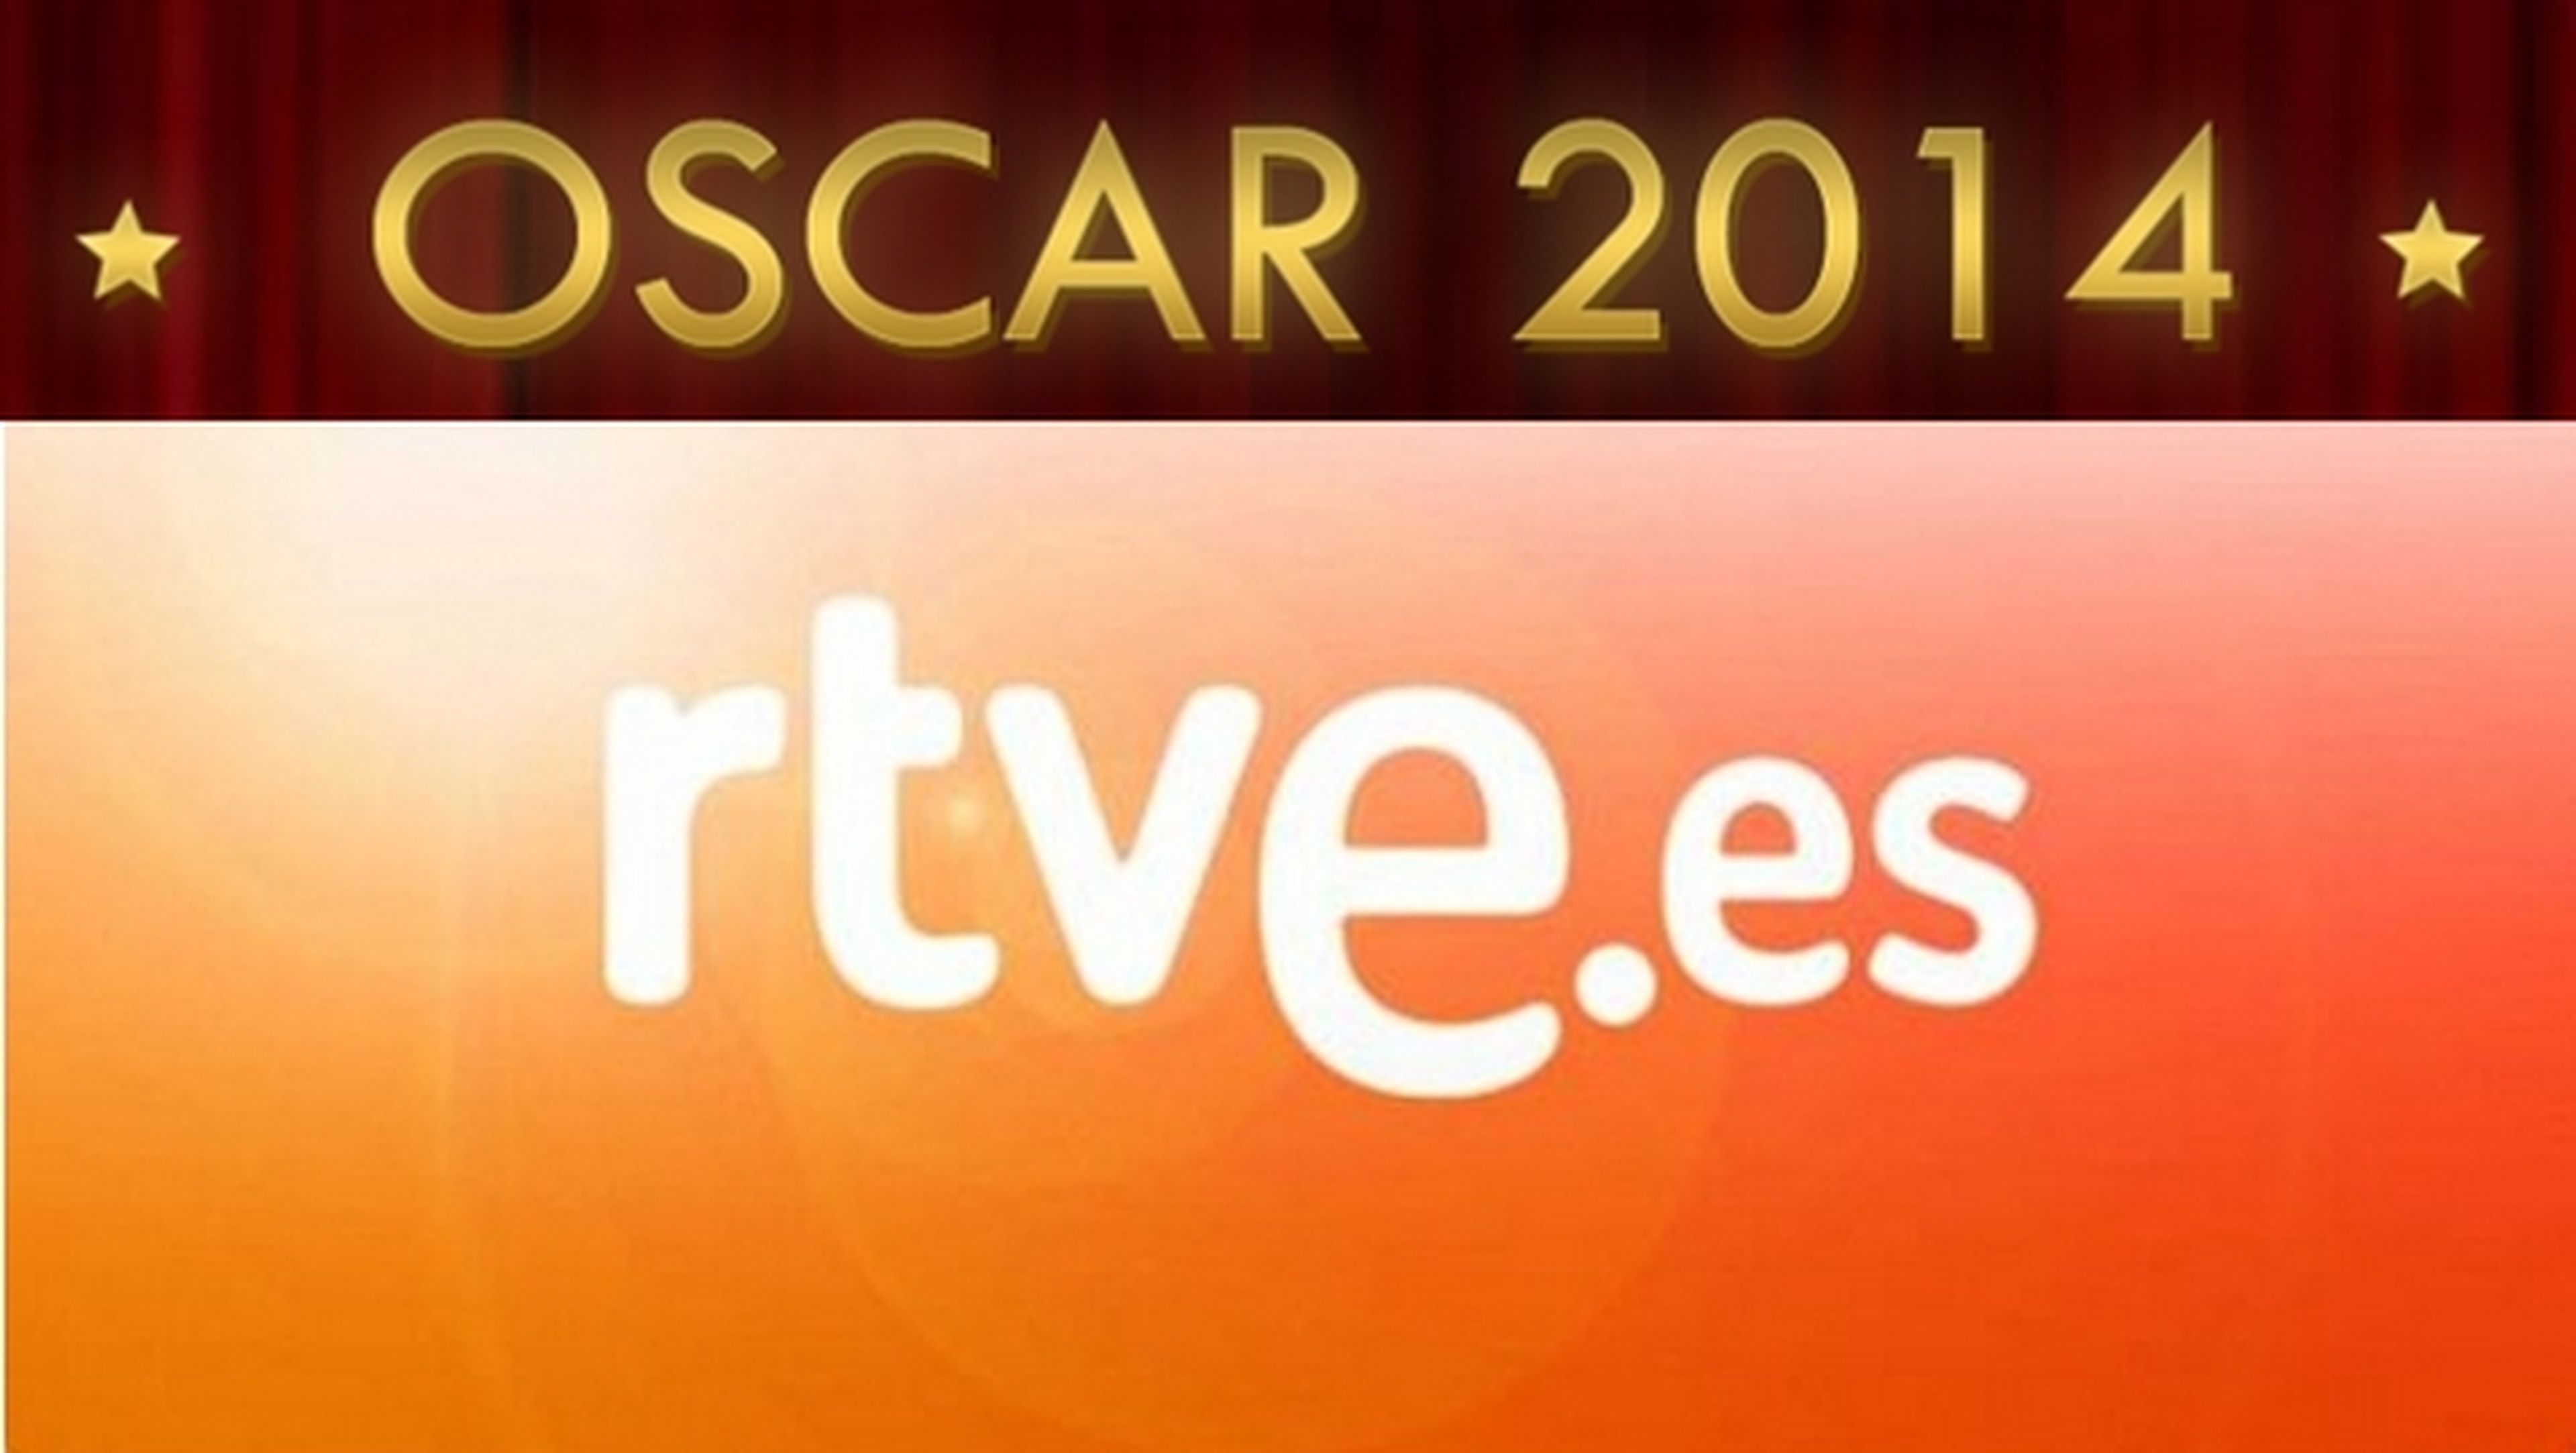 Los Oscar en RTVE.es